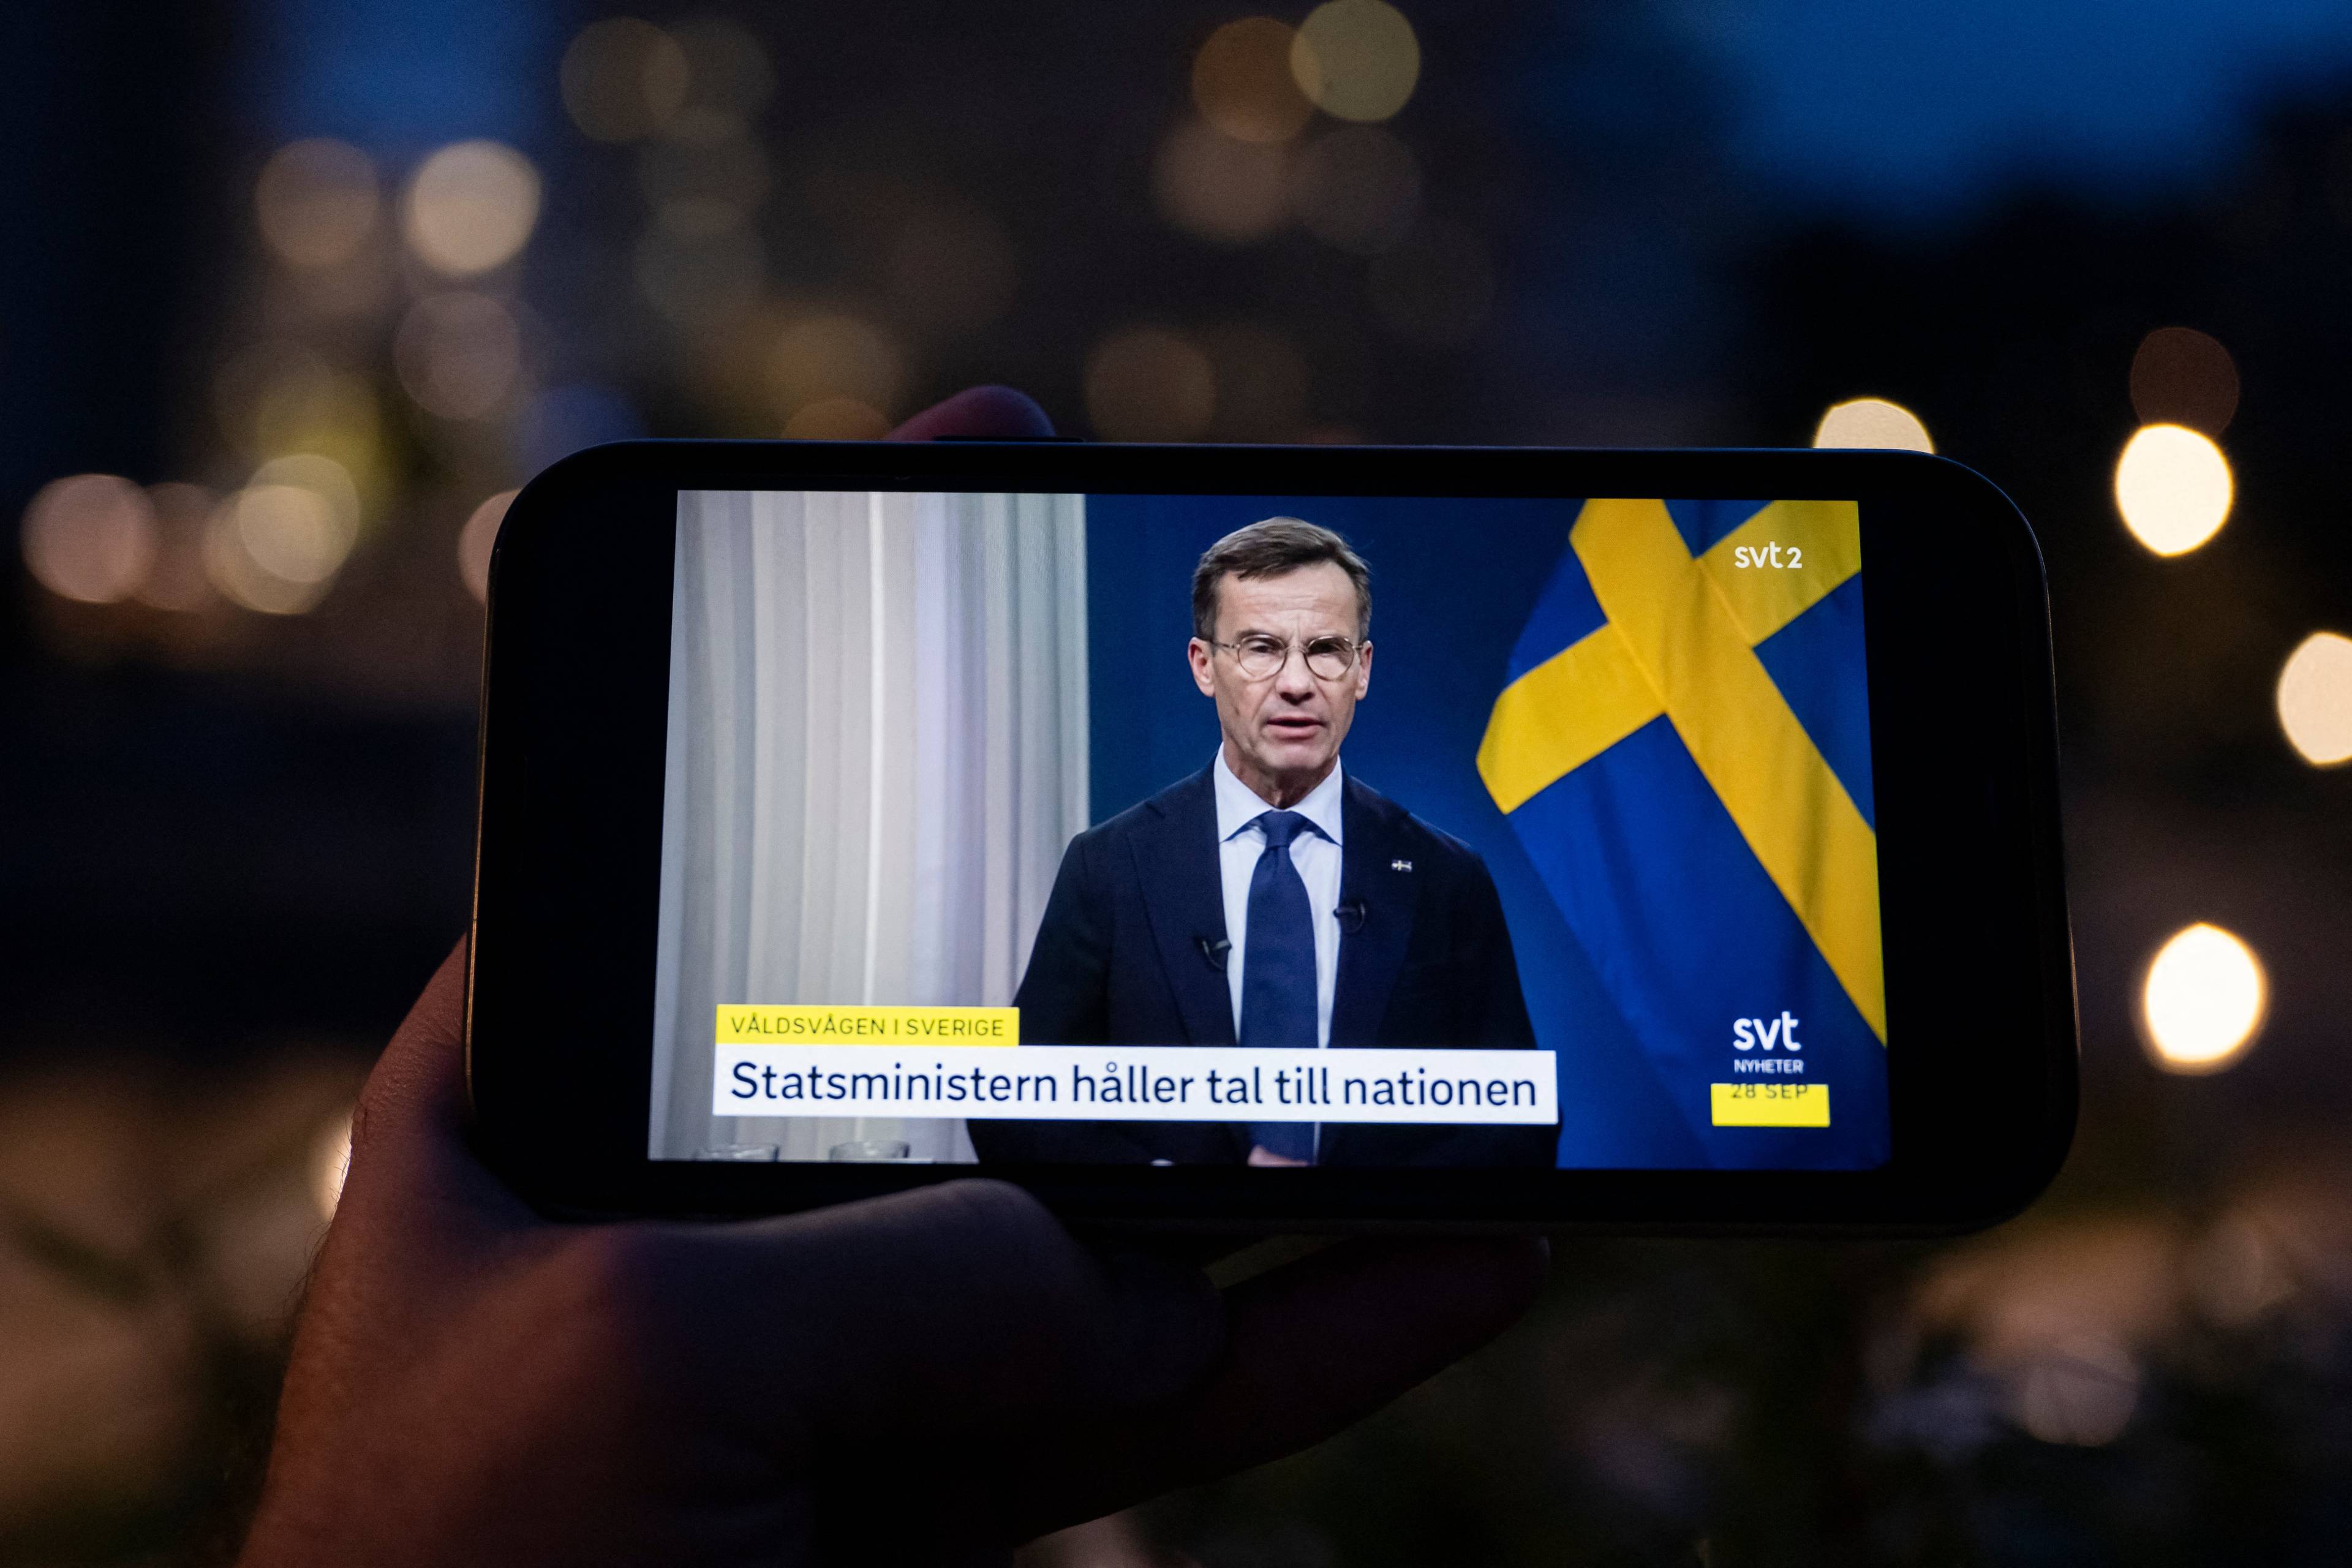 Na ekranie telefonu widać męzczyznę w garniturze, który przemawia przy szwedzkiej fladze. Napis po szwedzku